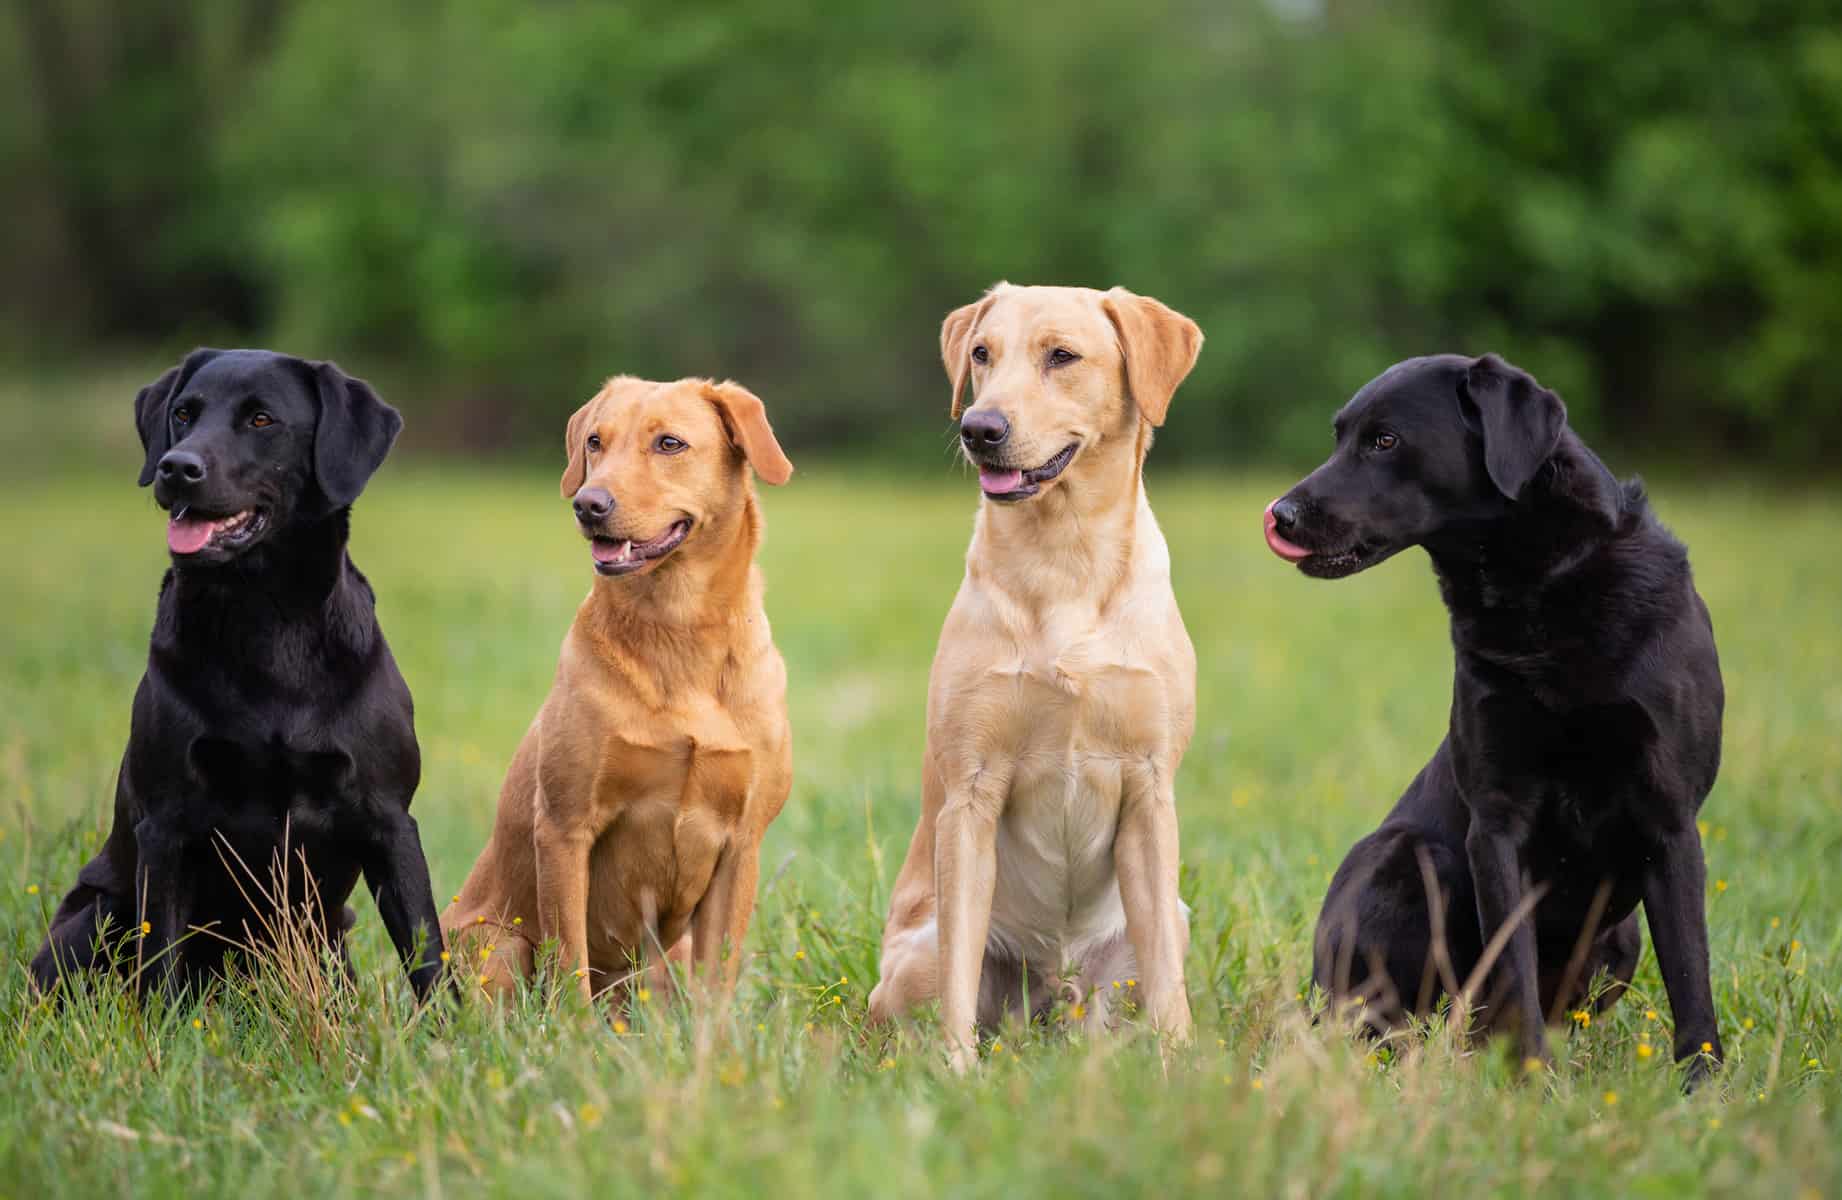 Labrador Retriever Colors: The Standard & Rare Lab Coat Colors - Four Color LabraDor Retriever Dogs Sitting On The Grass